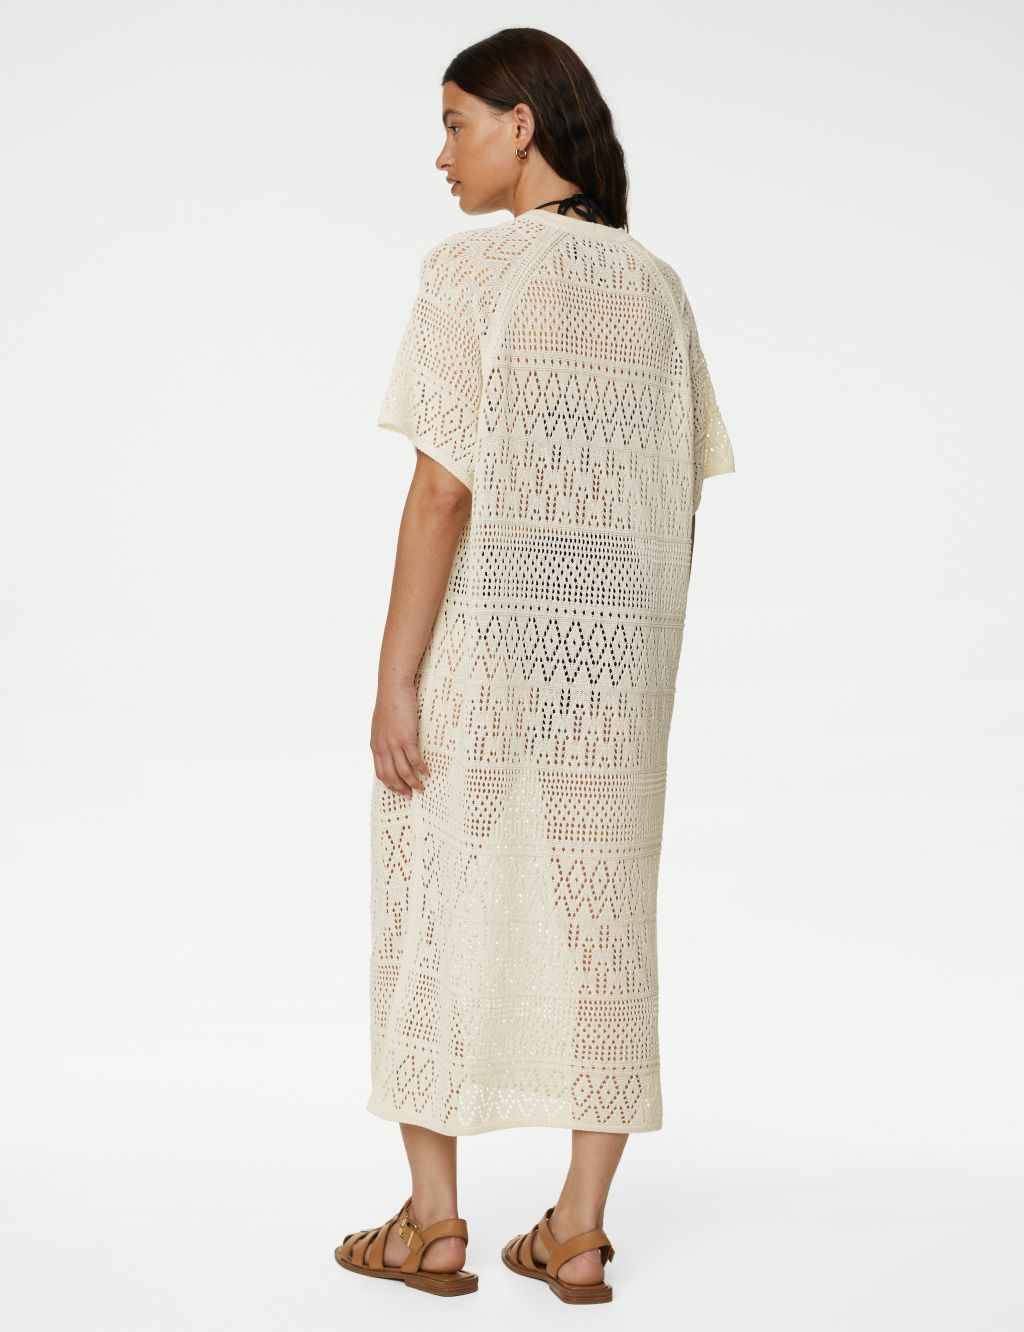 Cotton Blend Pointelle V-Neck Knitted Dress image 3